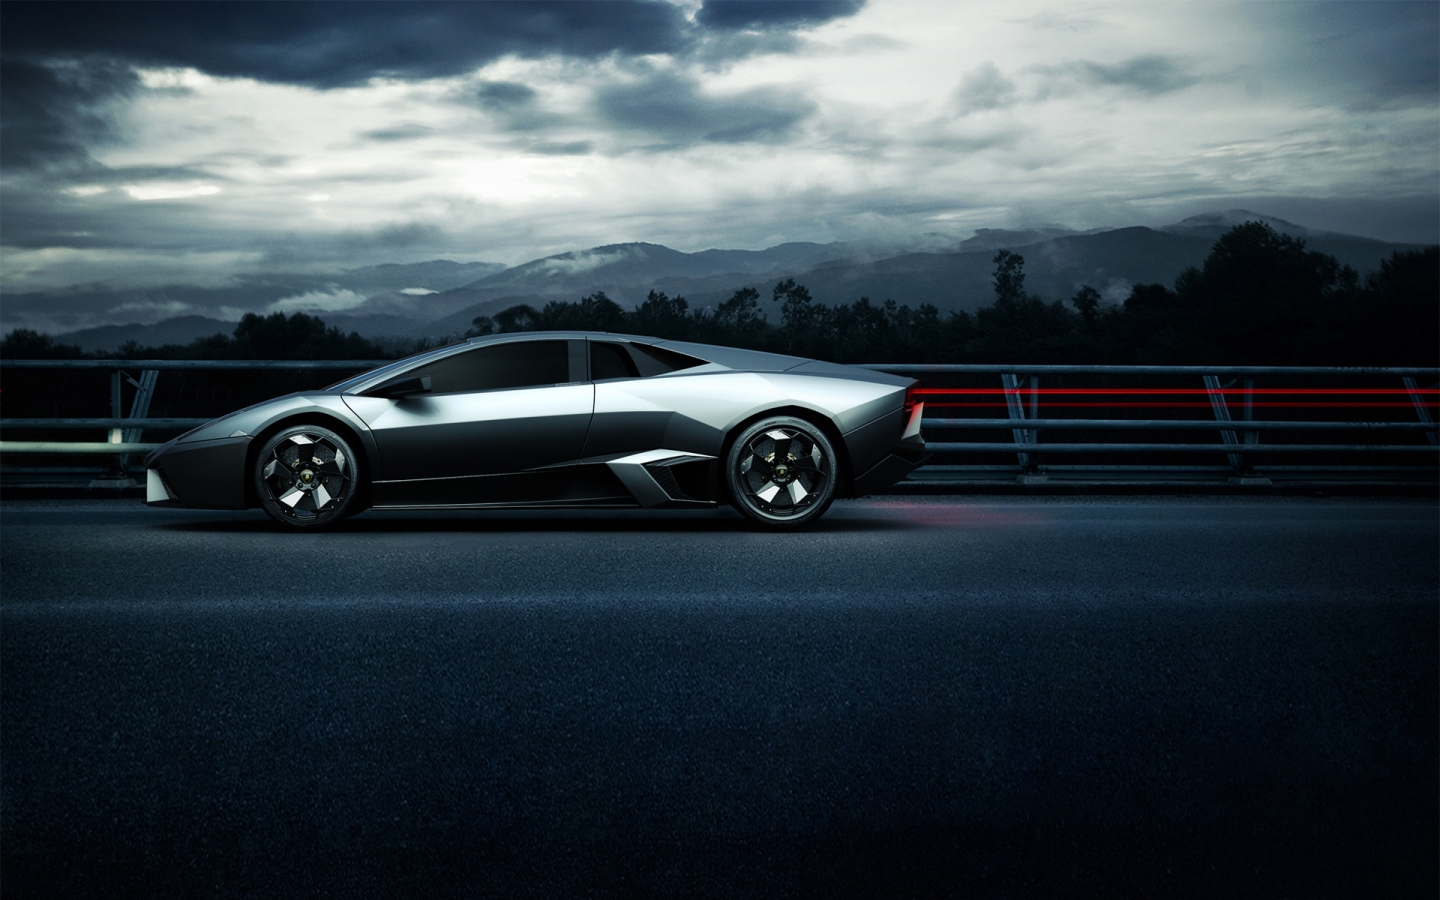 Lamborghini Sport Side Angle for 1440 x 900 widescreen resolution